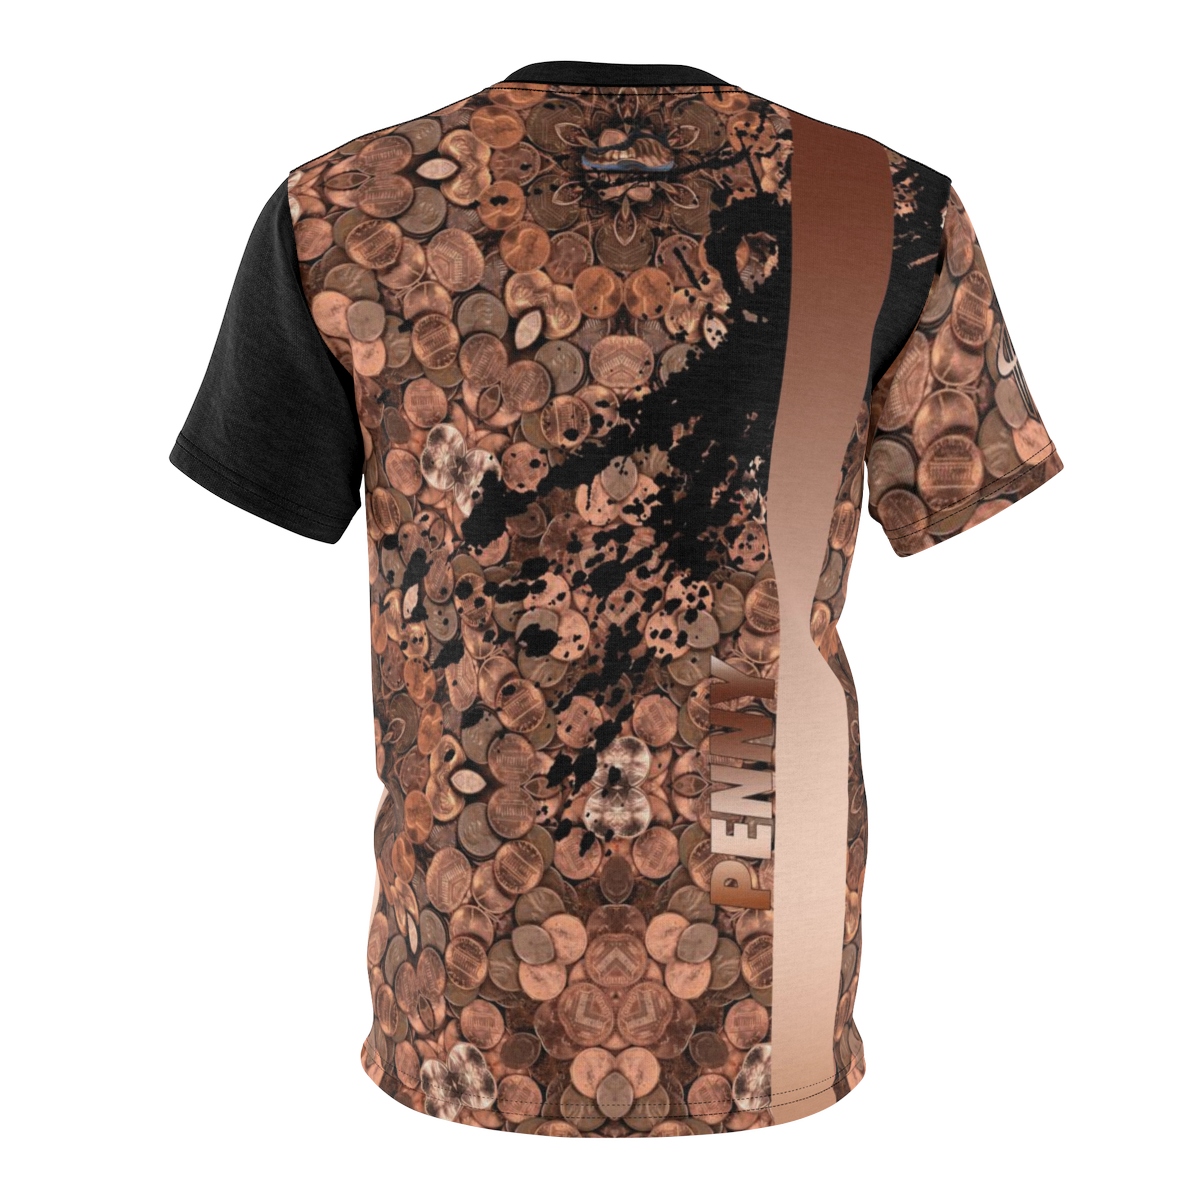 Copper Foamposite Kill Bill V4 Sneaker ColorwayMatch T-Shirt